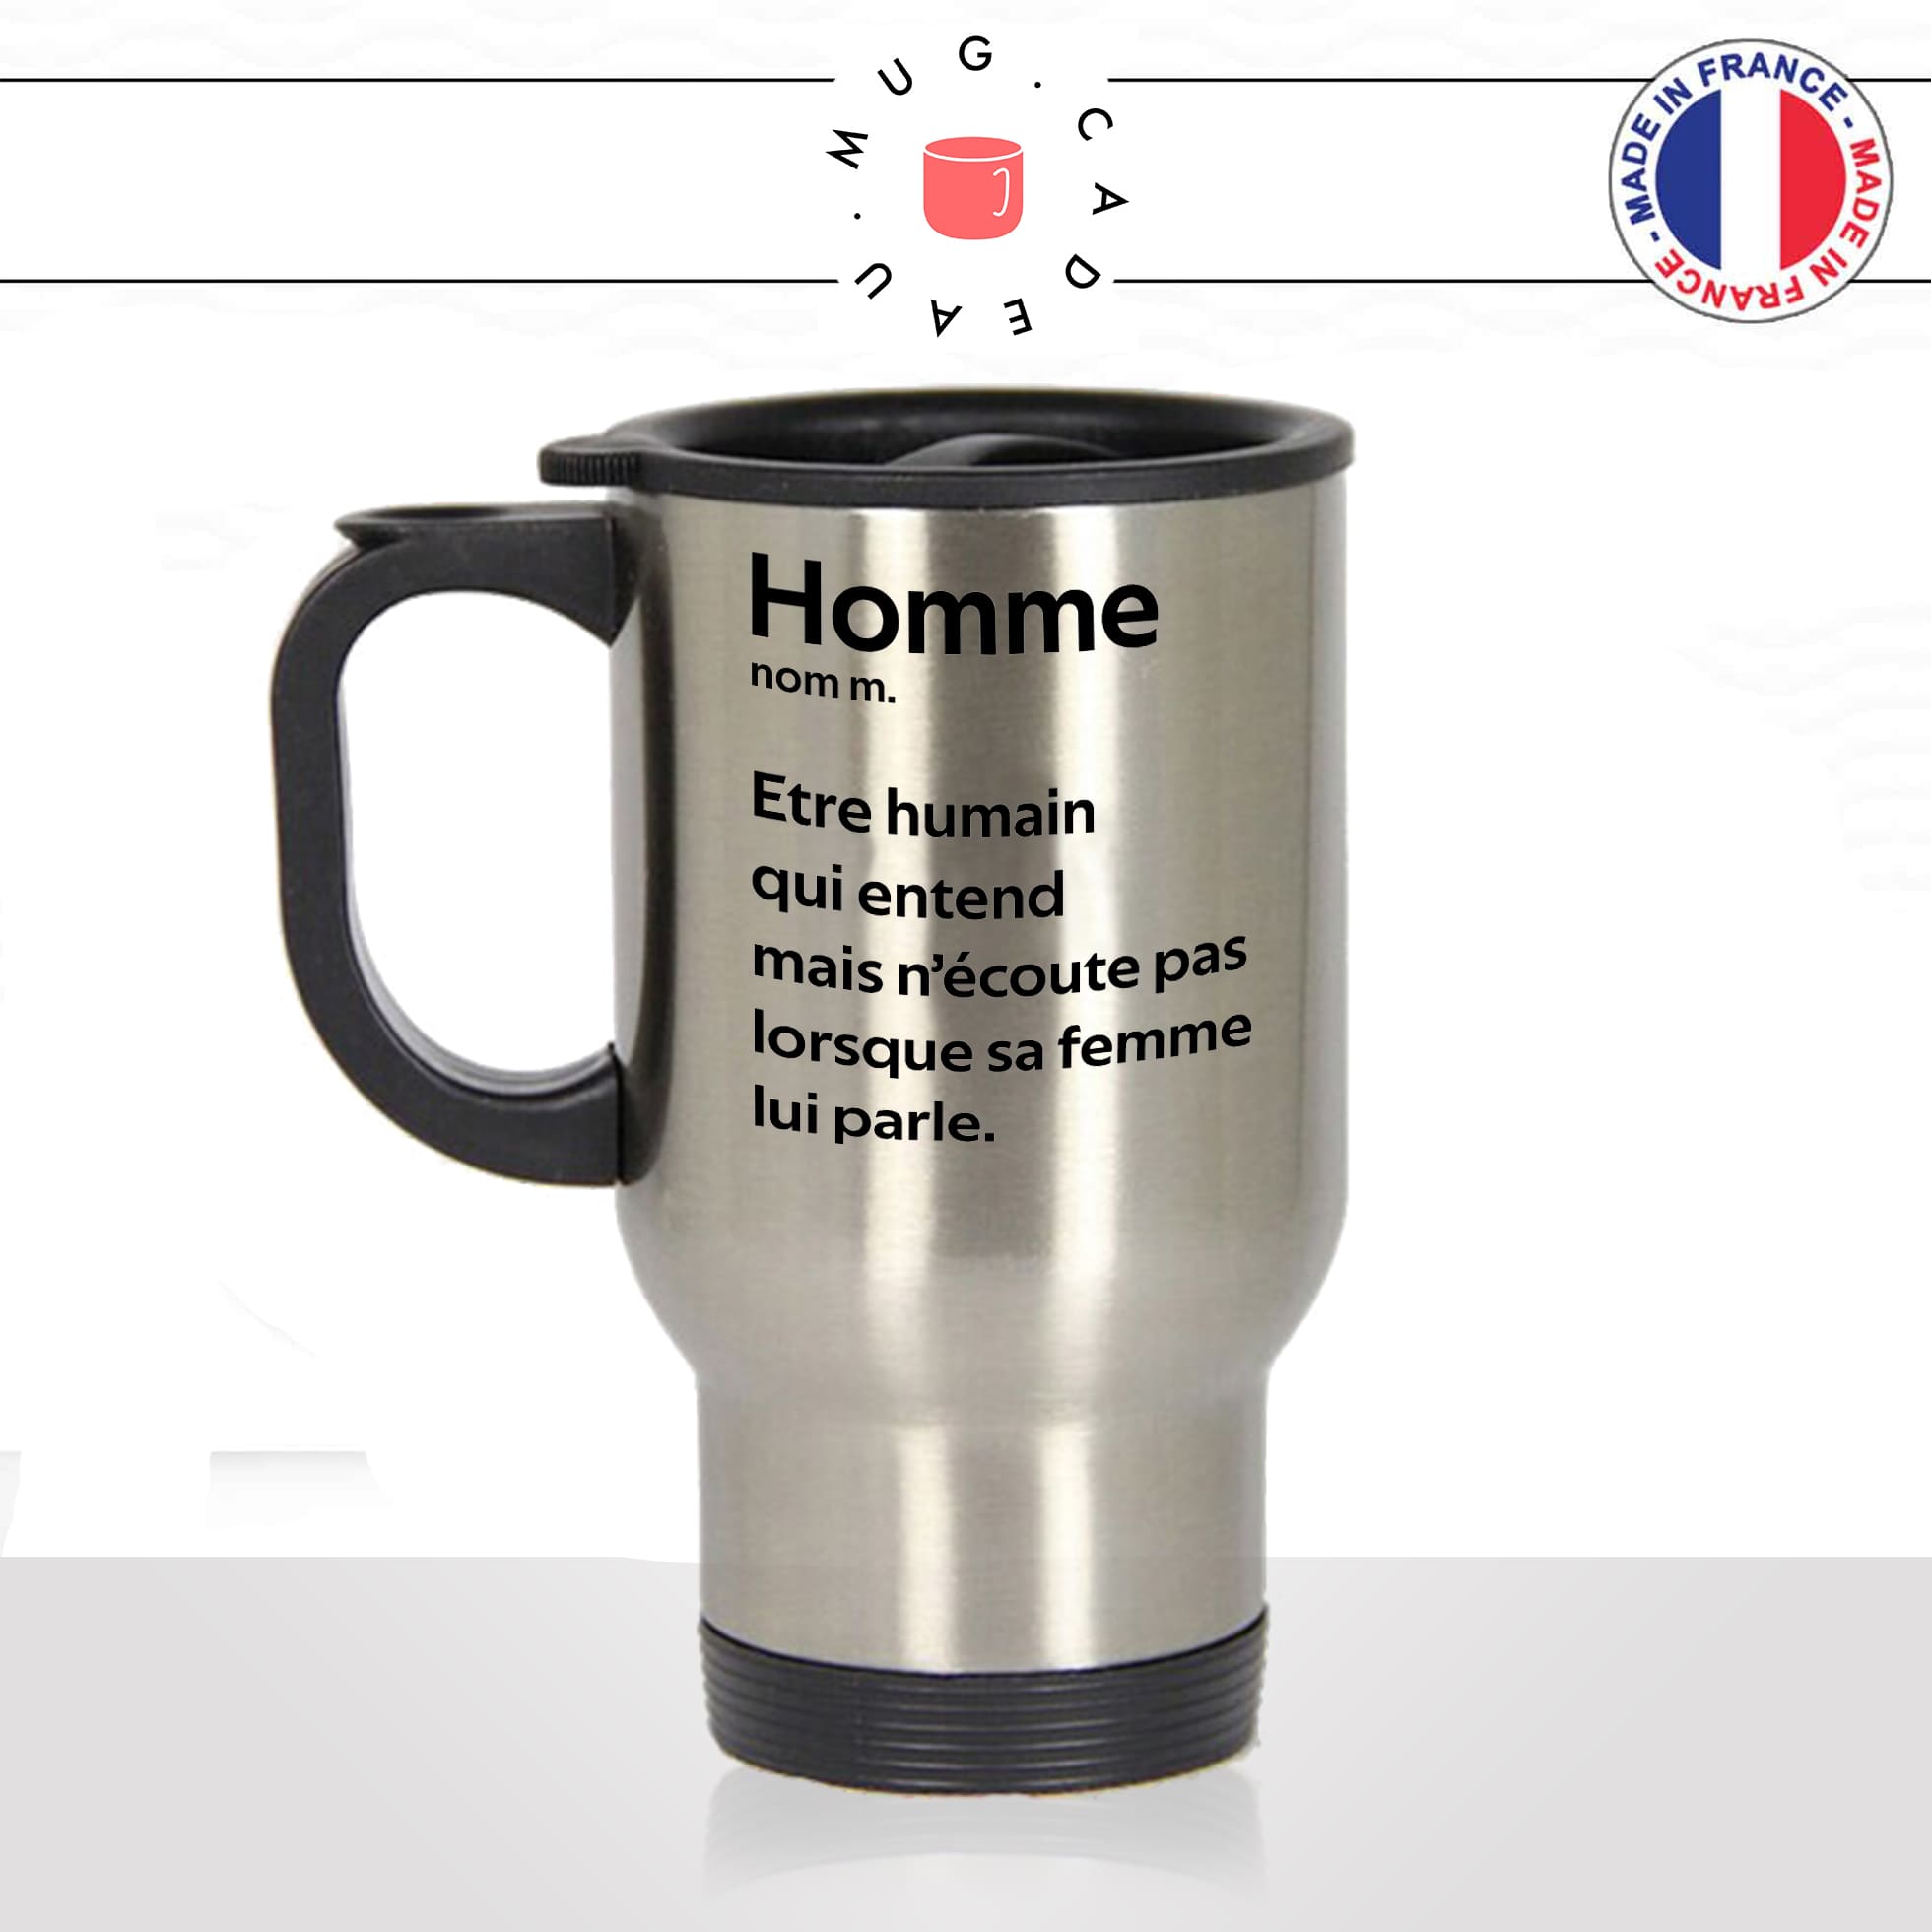 mug-tasse-thermos-isotherme-voyage-homme-définition-entend-mais-nécoute-pas-sa-femme-défaut-couple-ménage-humour-fun-idée-cadeau